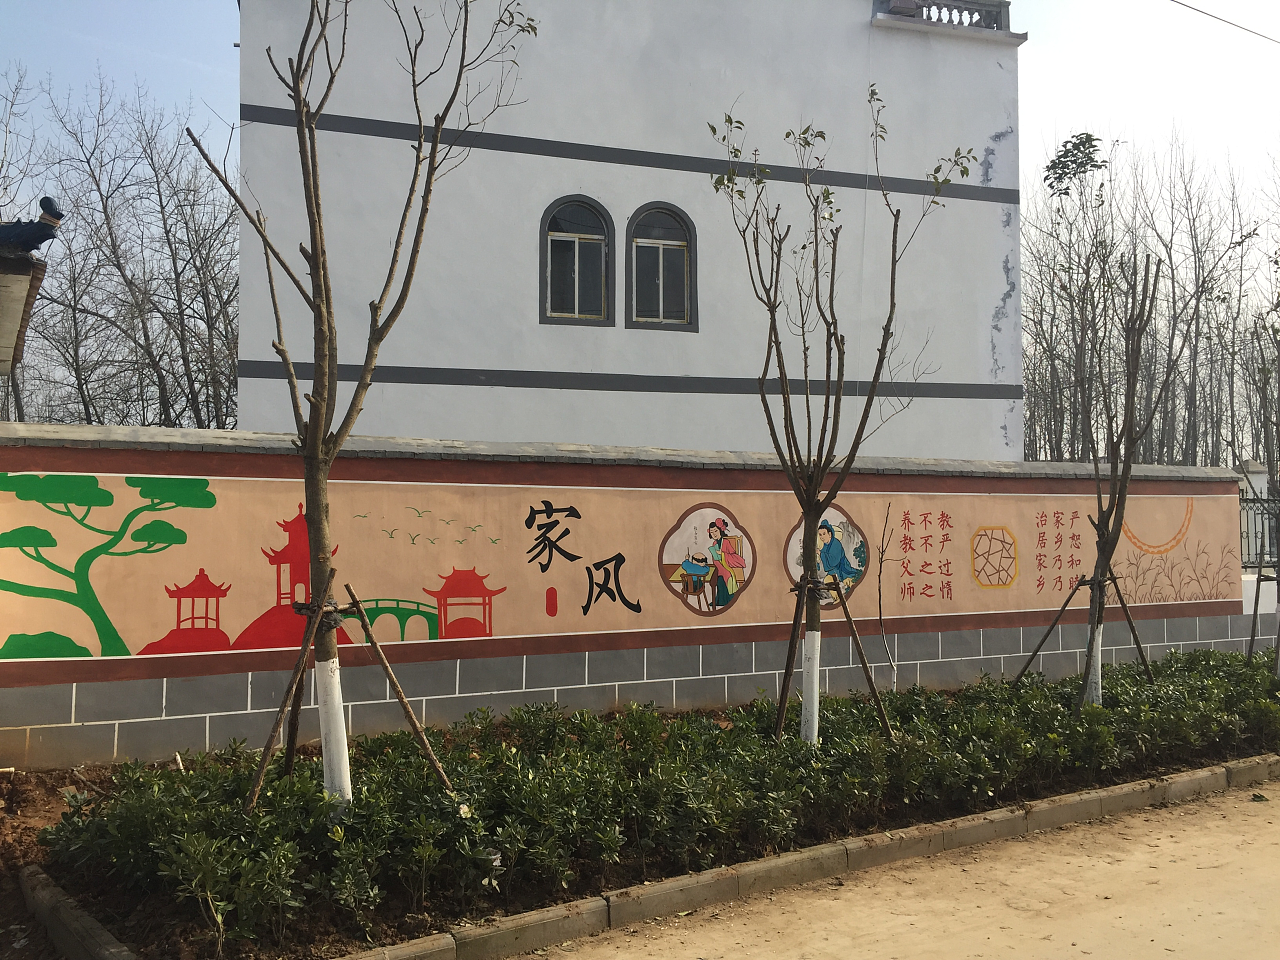 墙绘素材、新农村彩绘、围墙彩绘素材、讲文明